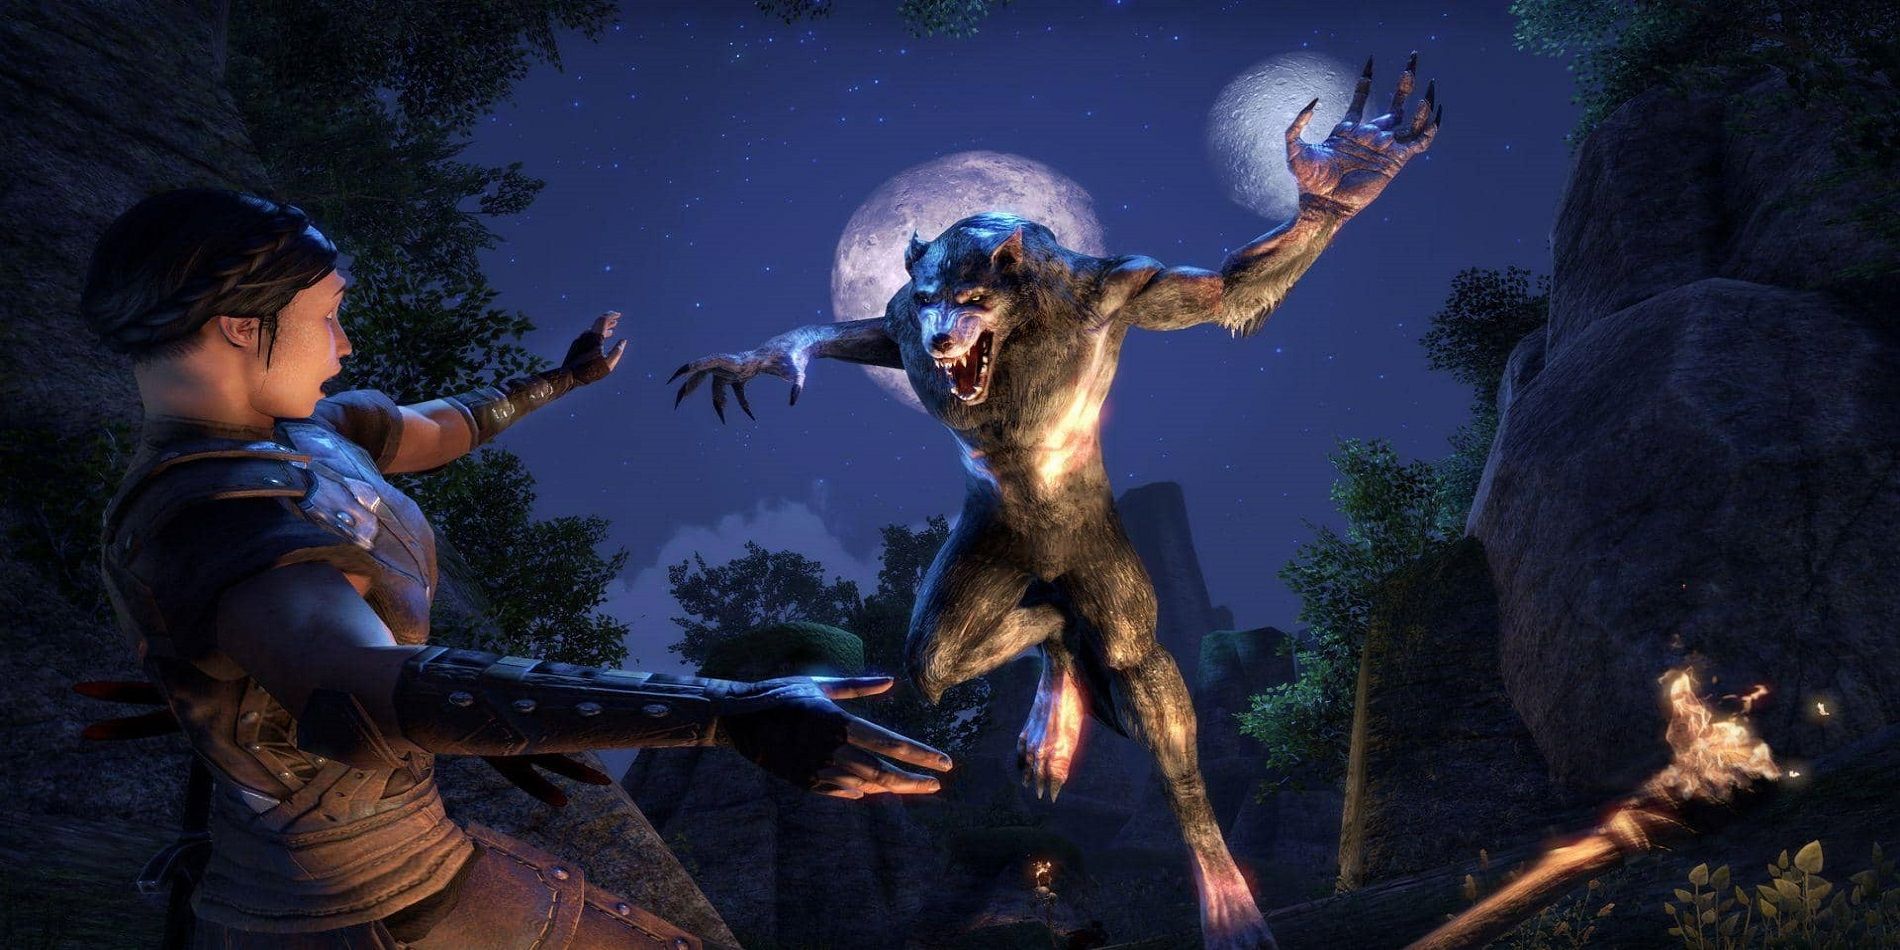 Elder Scrolls Online Leaping Werewolf Attacking Woman Warrior Nightime